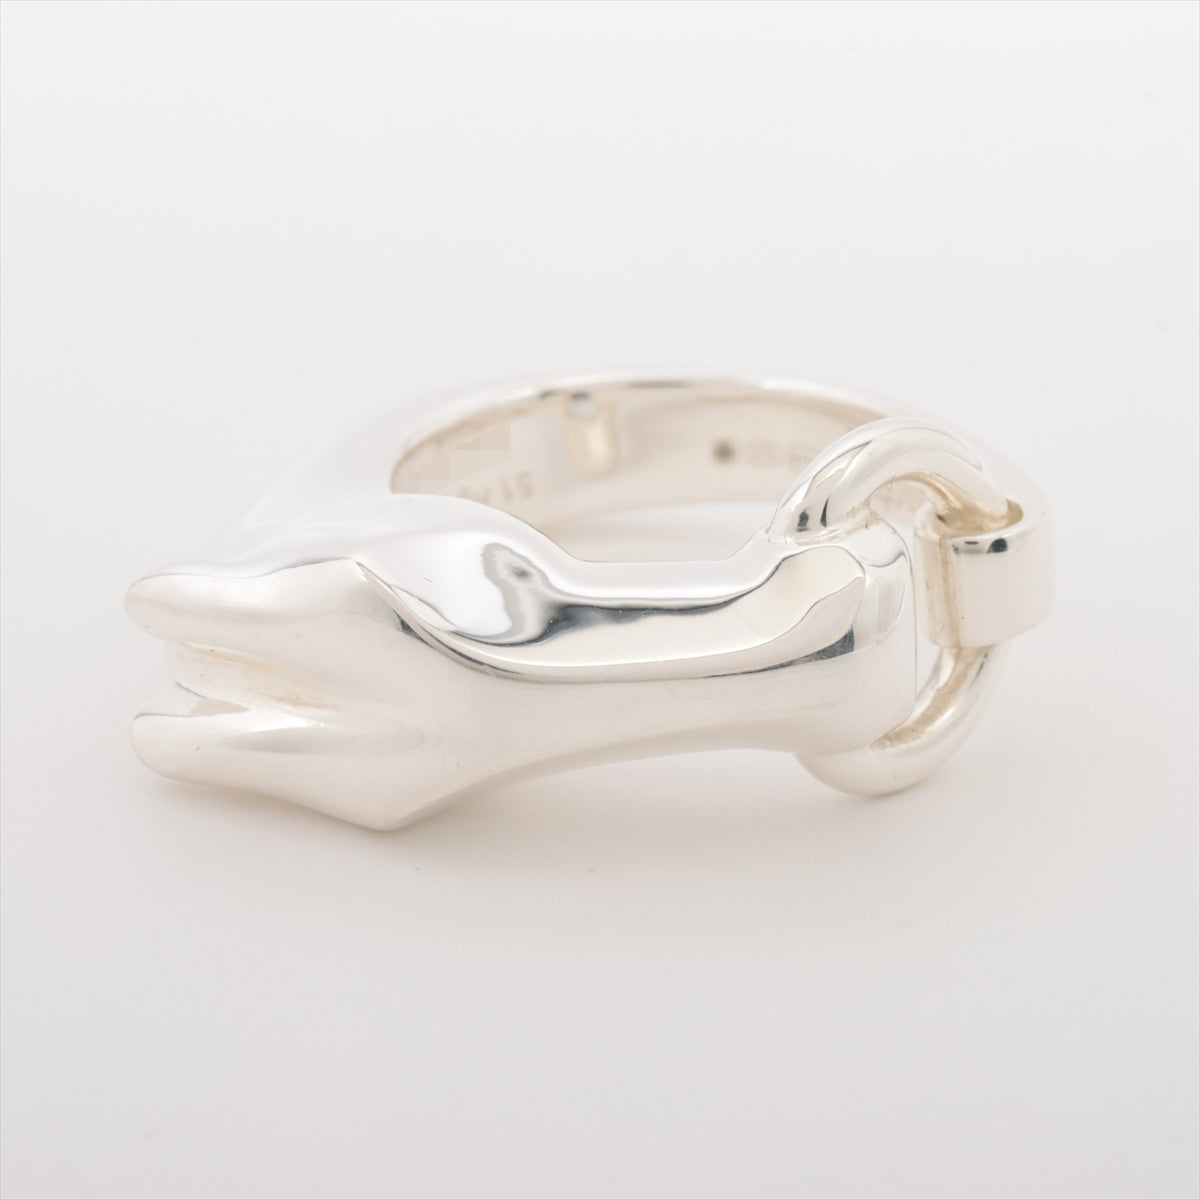 Hermès Galop rings 51 925 15.4g Silver rings